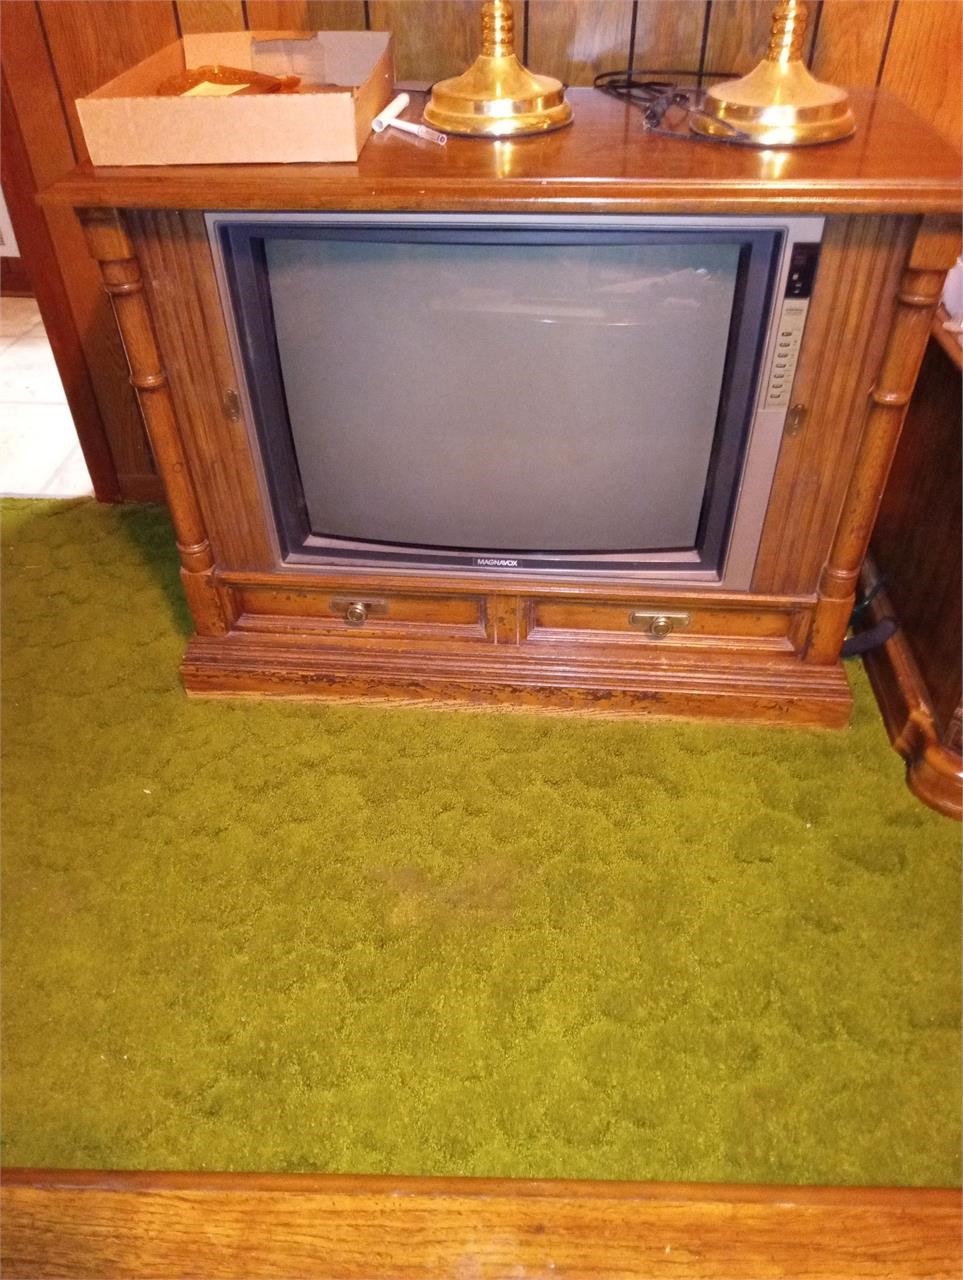 Antique Magnavox TV